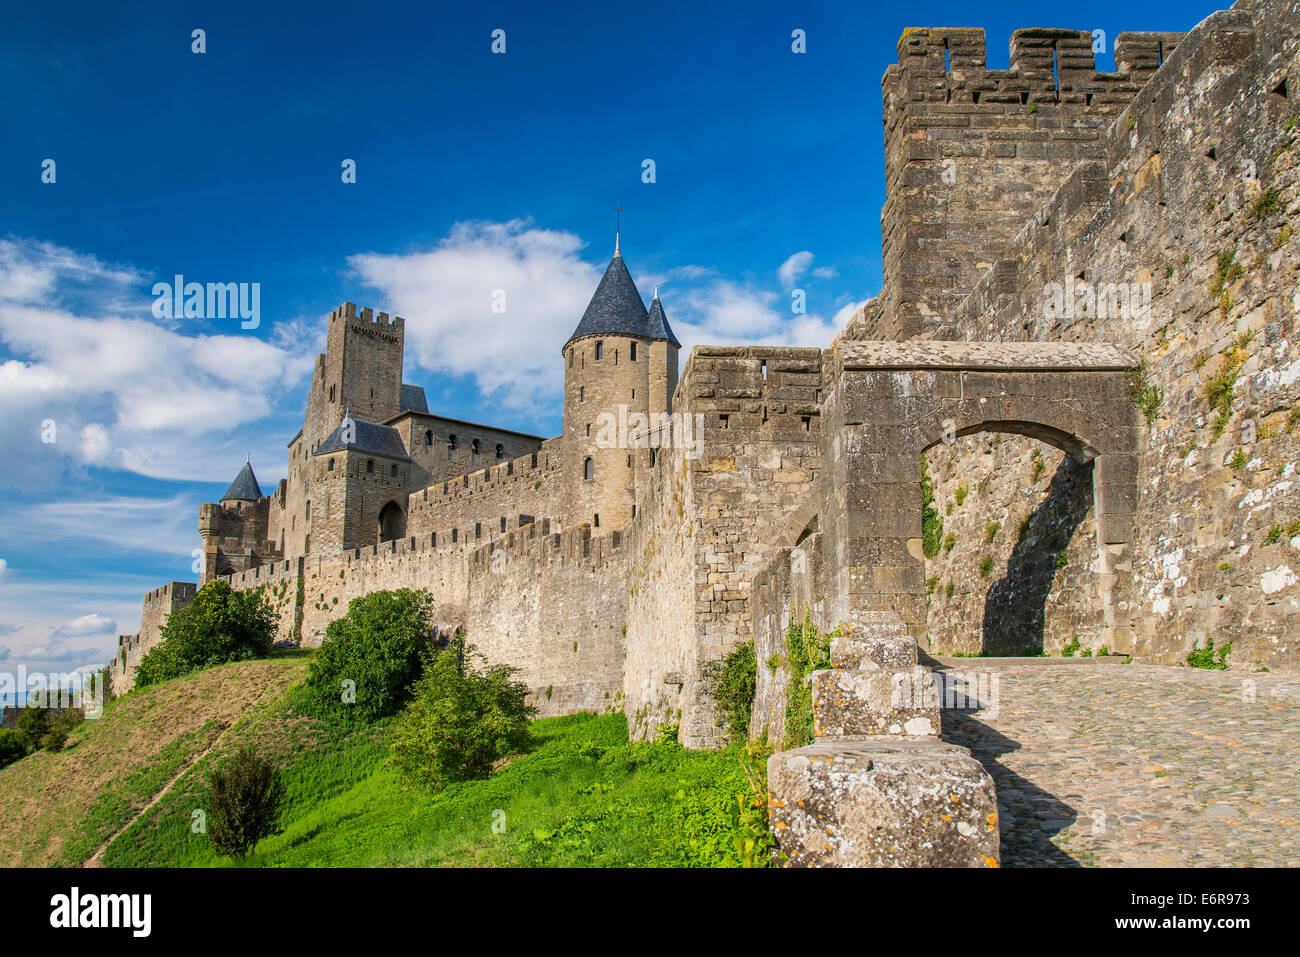 Porte d'entrée de la cité médiévale fortifiée, Carcassonne,  Languedoc-Roussillon, France Photo Stock - Alamy